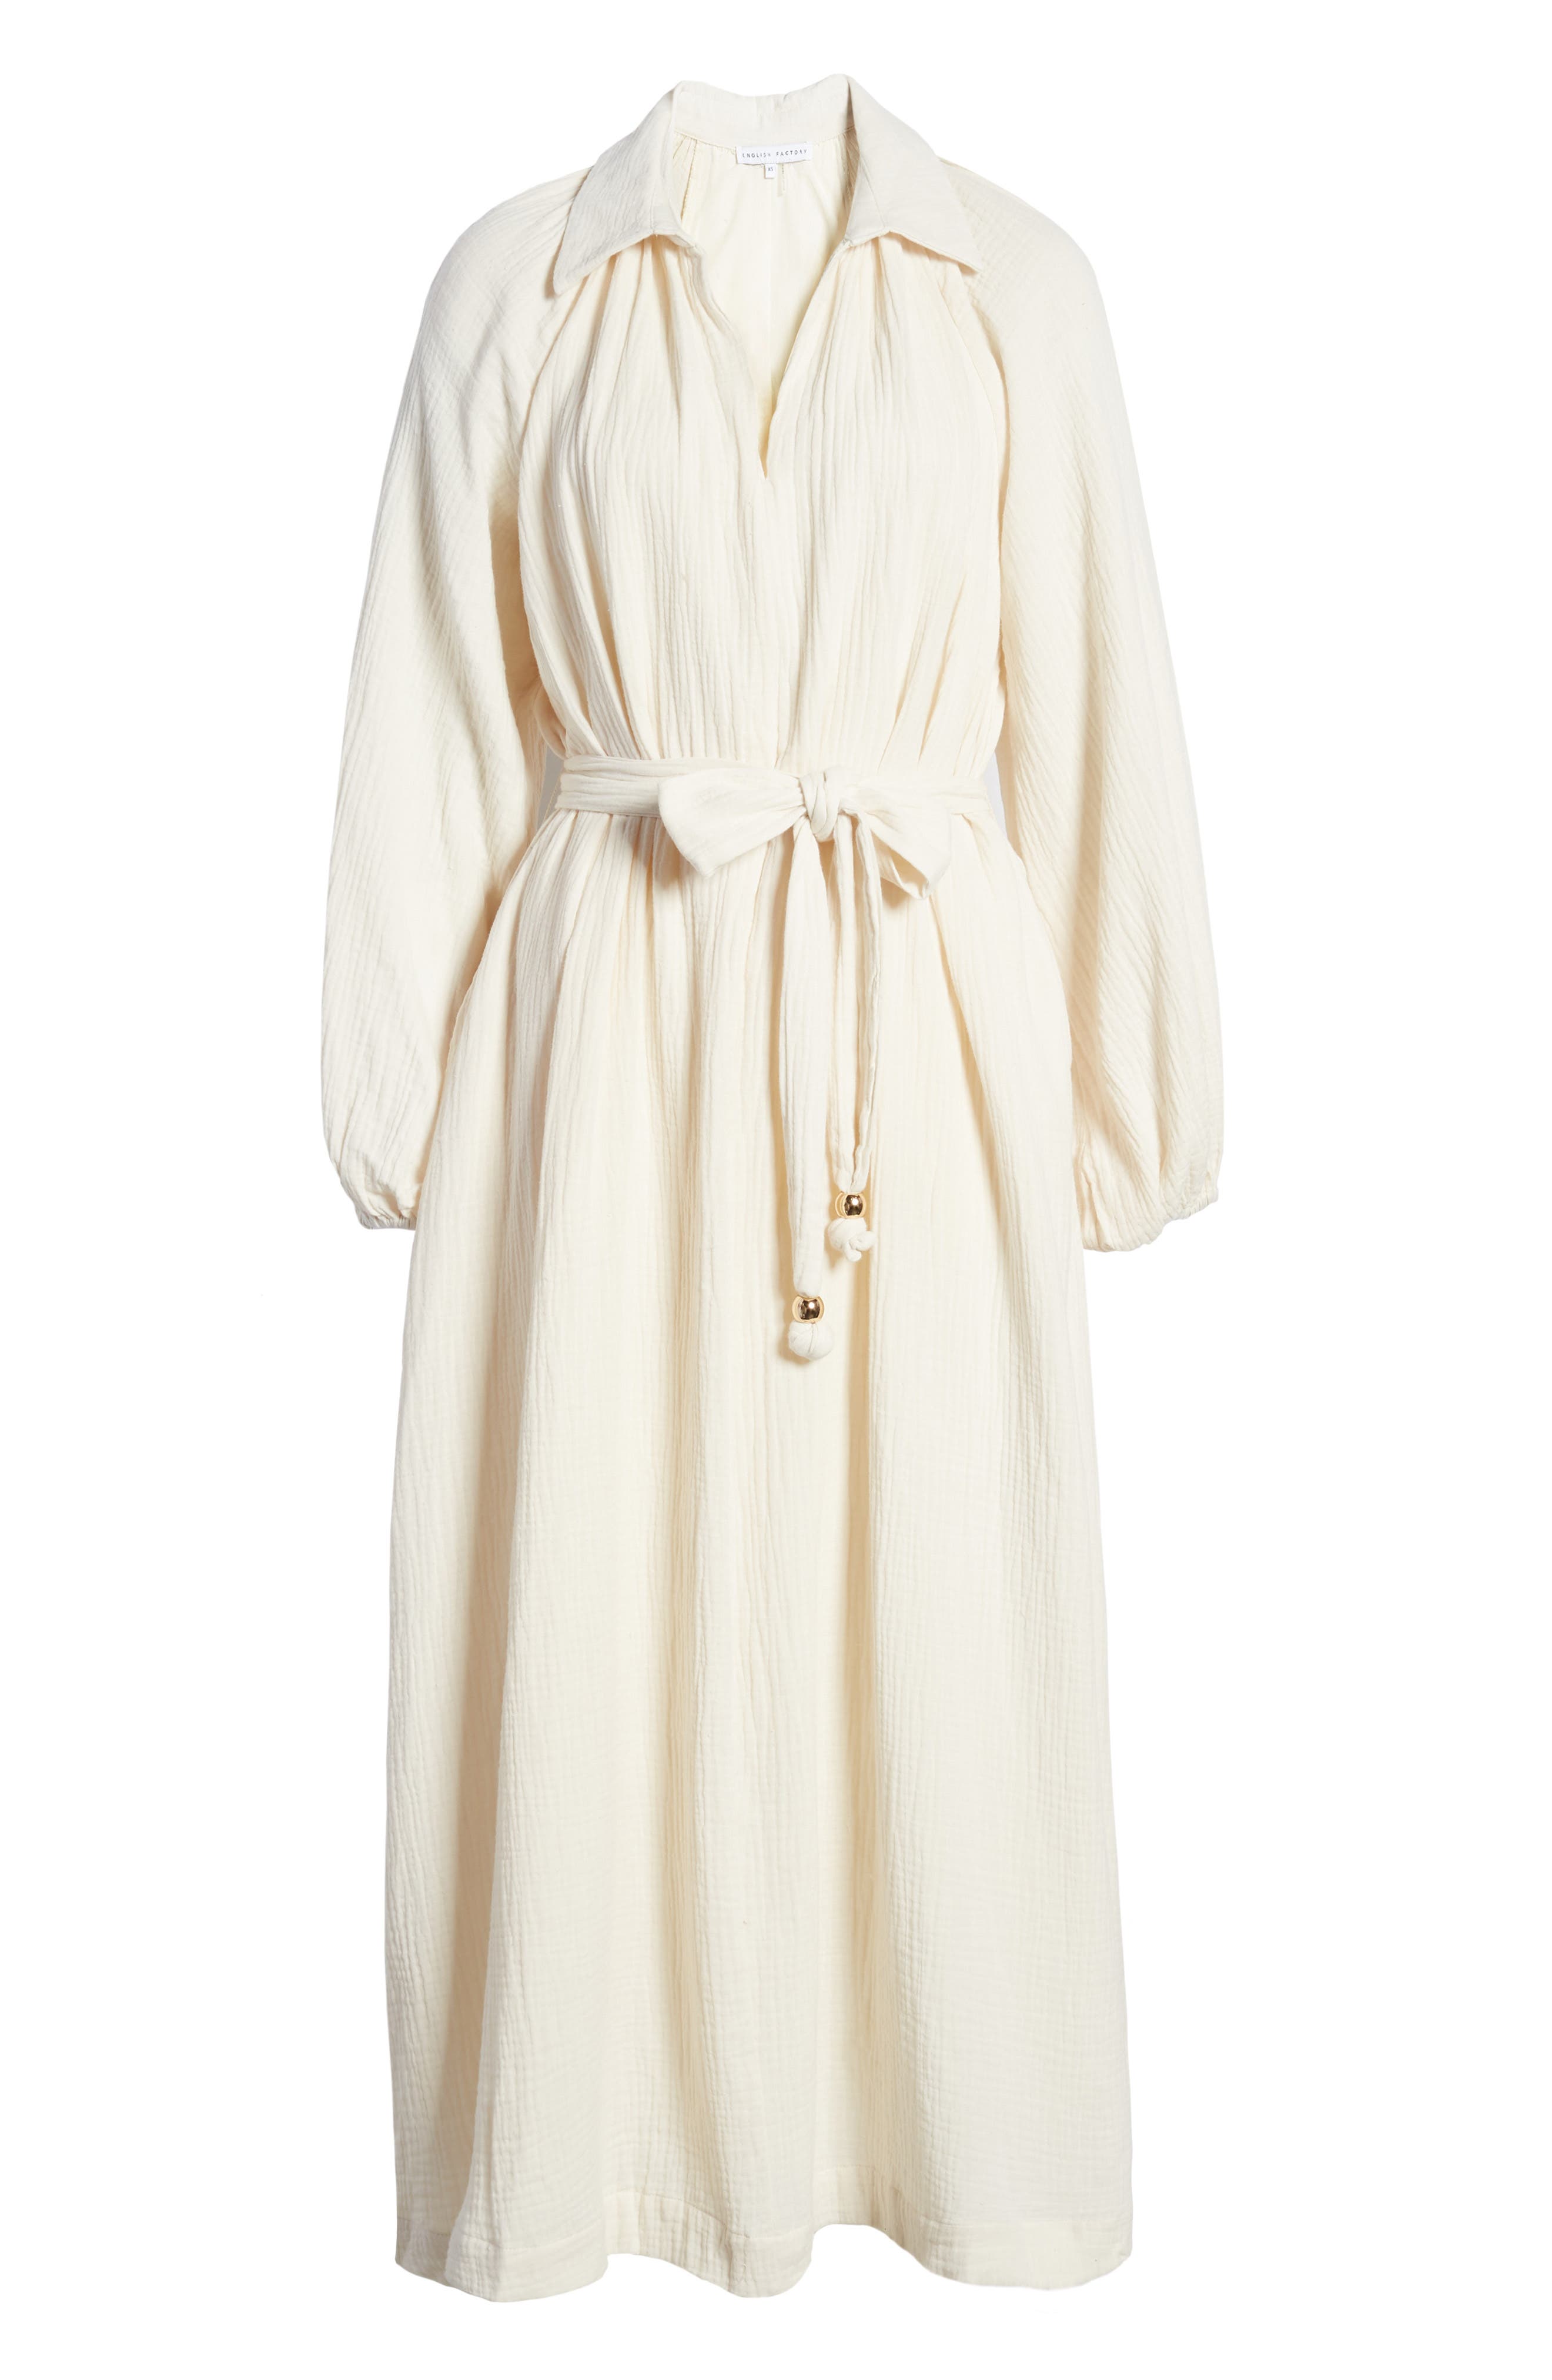 nordstrom white long sleeve dress